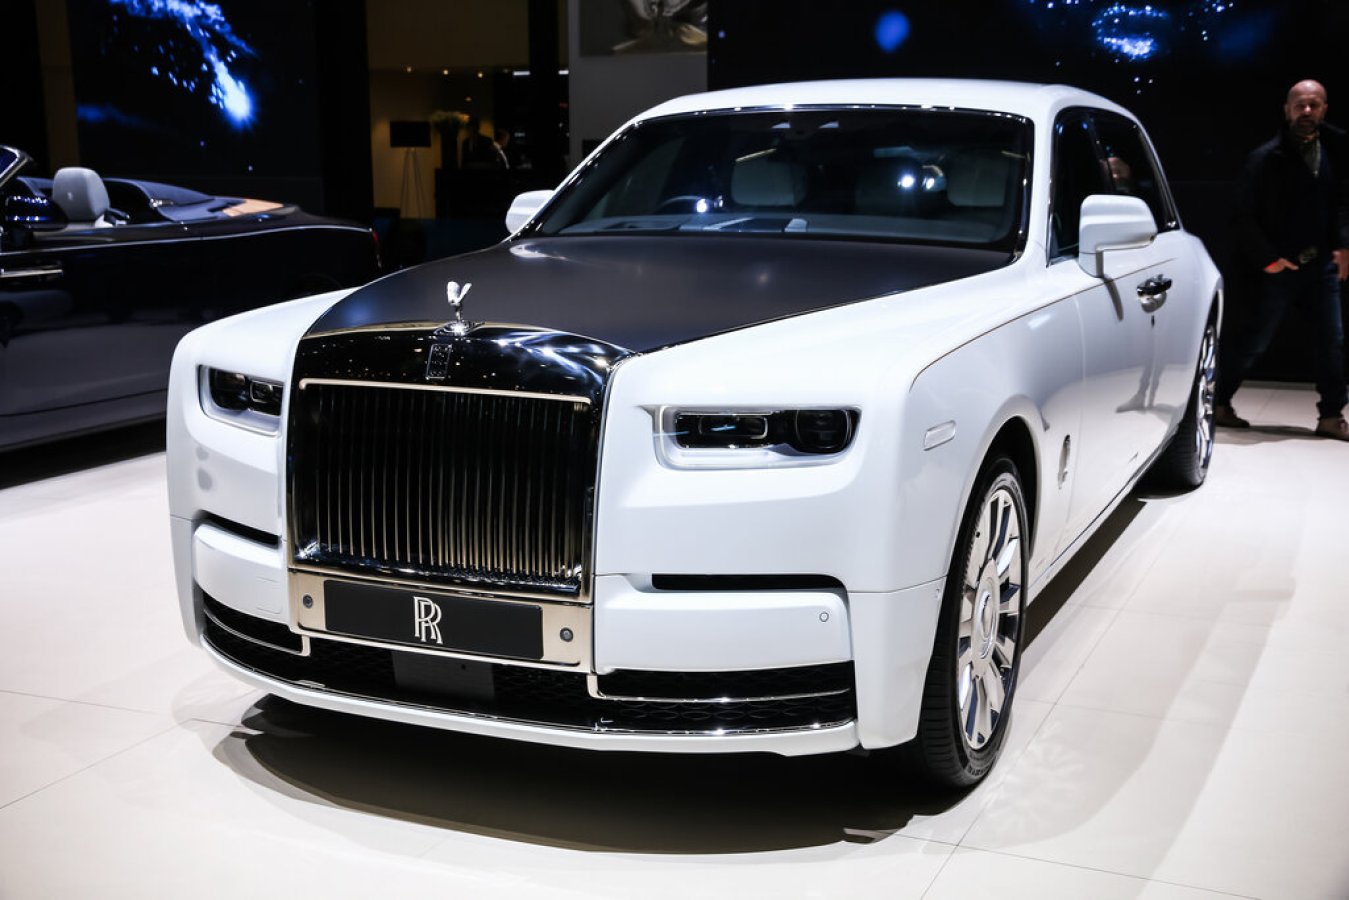 Rolls Royce: Still The Last Word In Luxury Driving